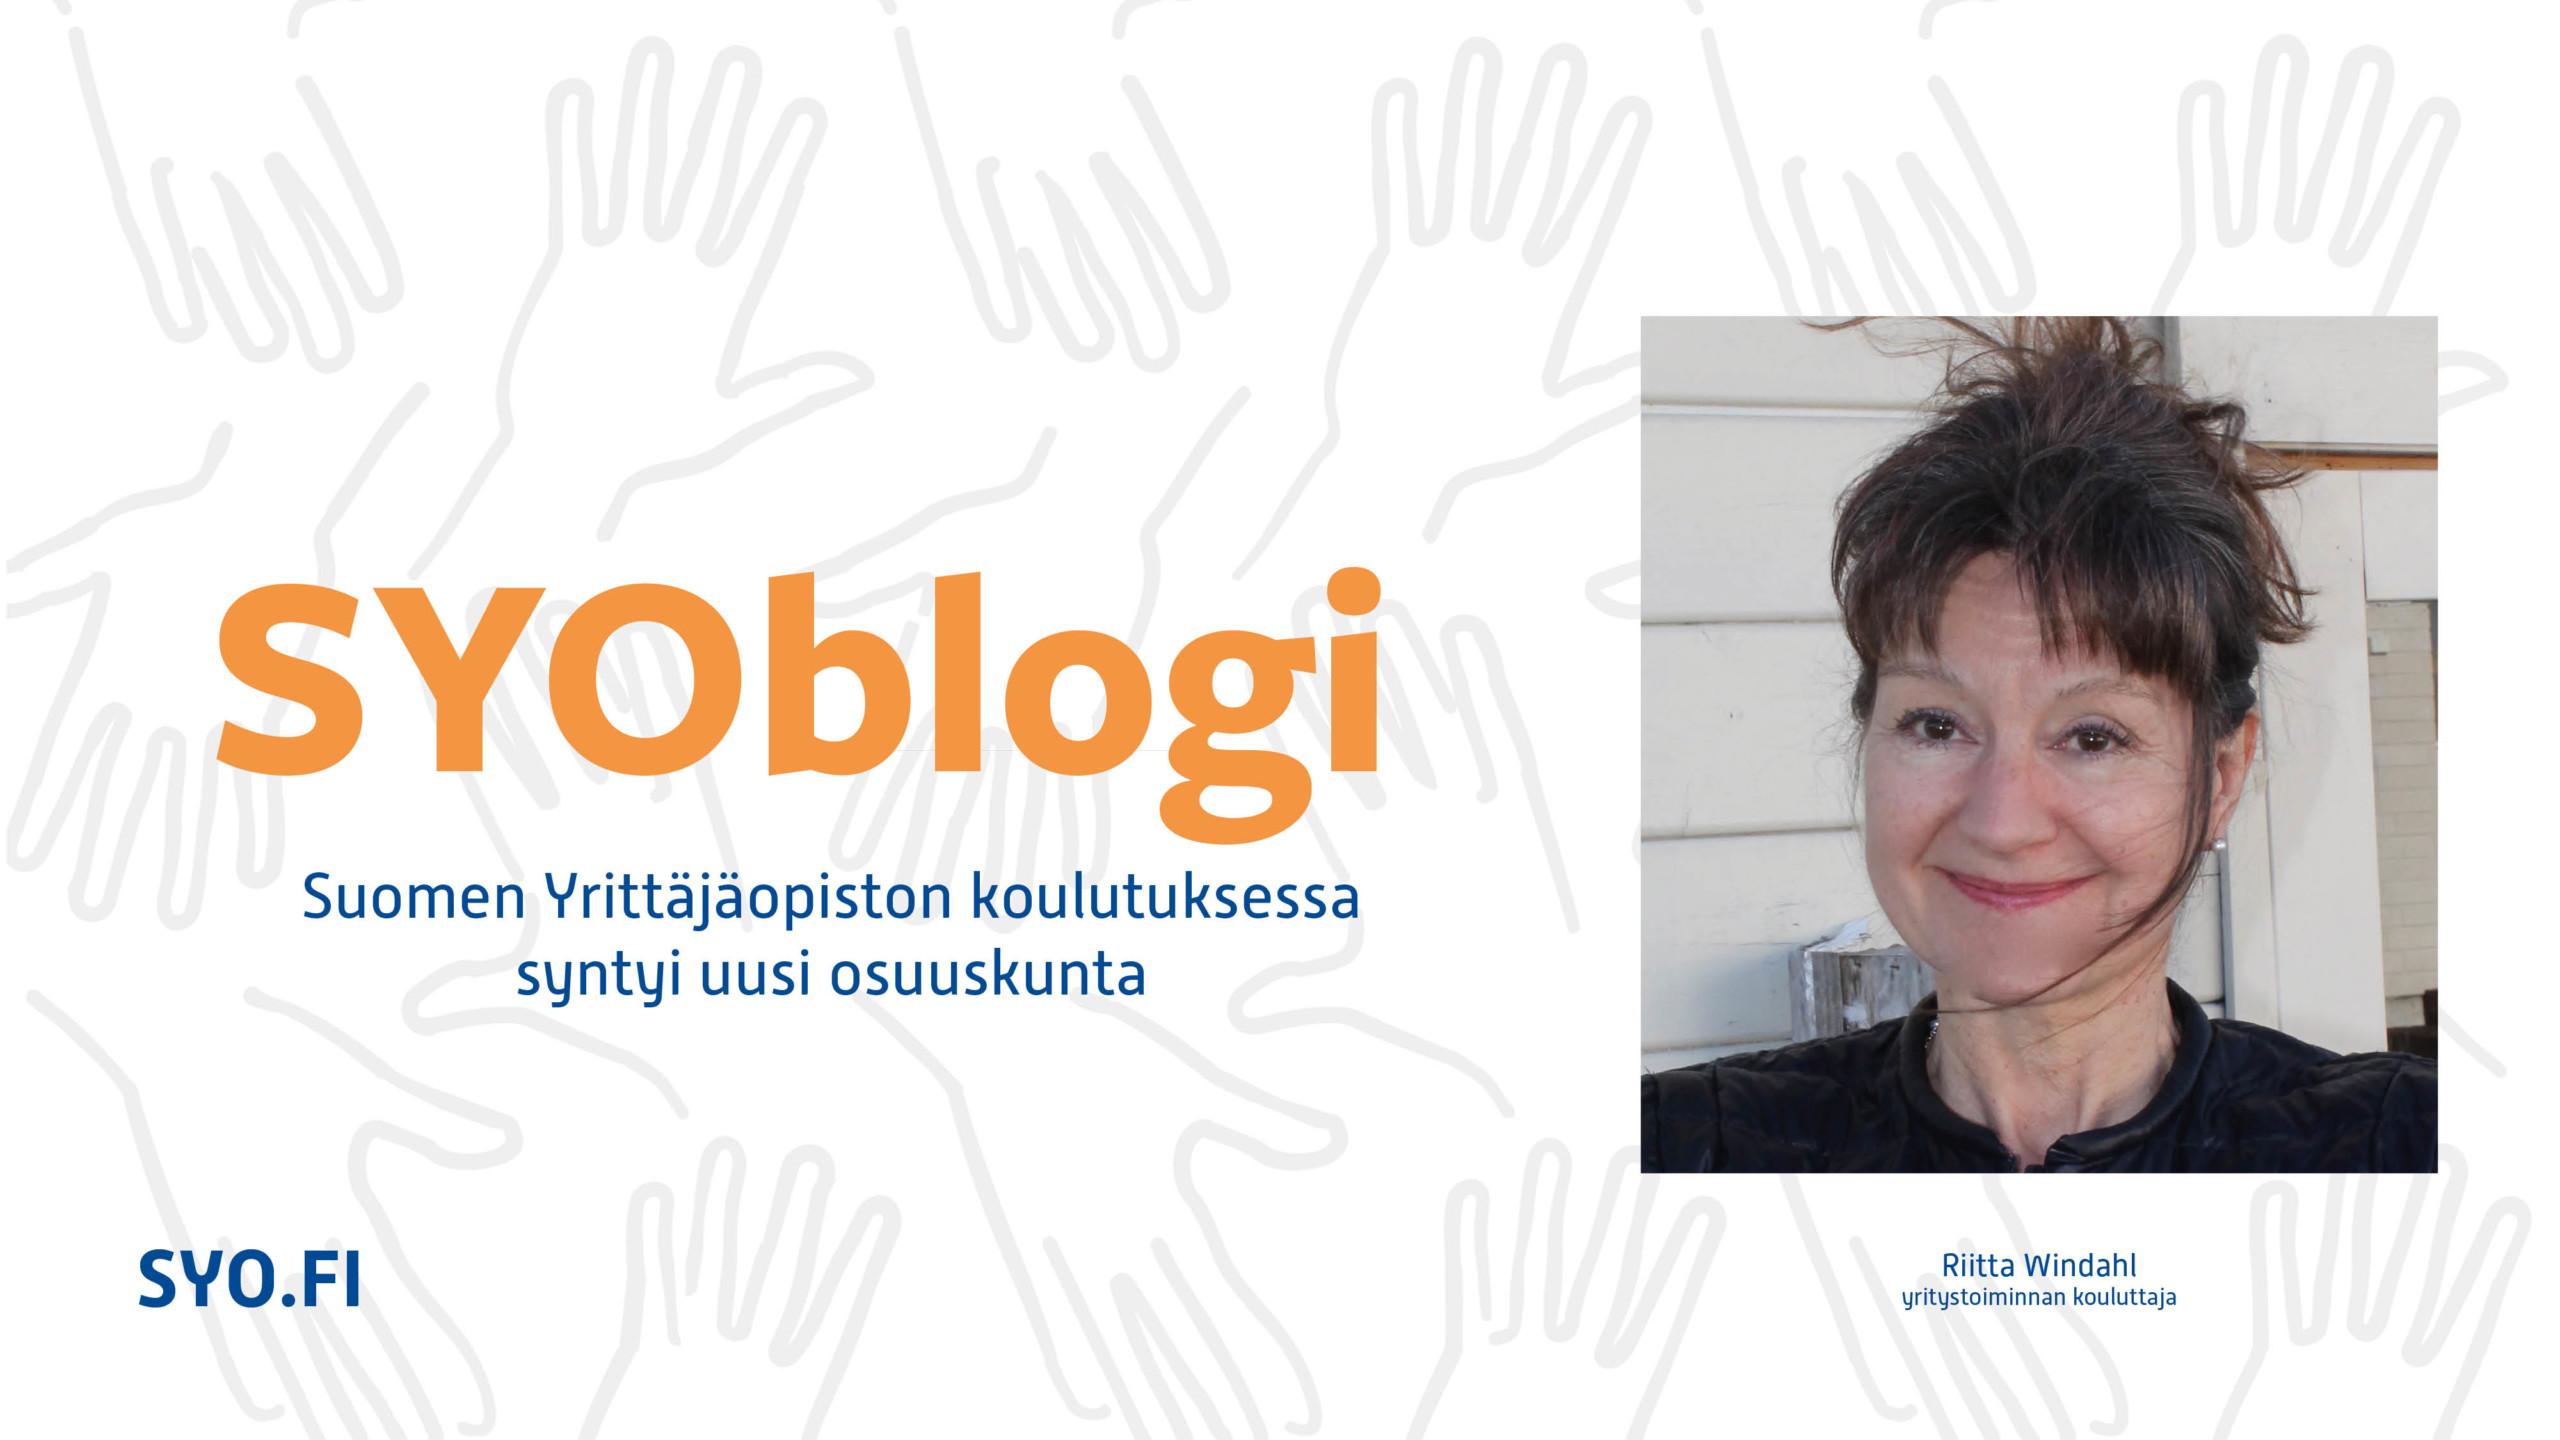 SYOblogi, Suomen Yrittäjäopiston koulutuksessa syntyi uusi osuuskunta, Riitta Windahl.